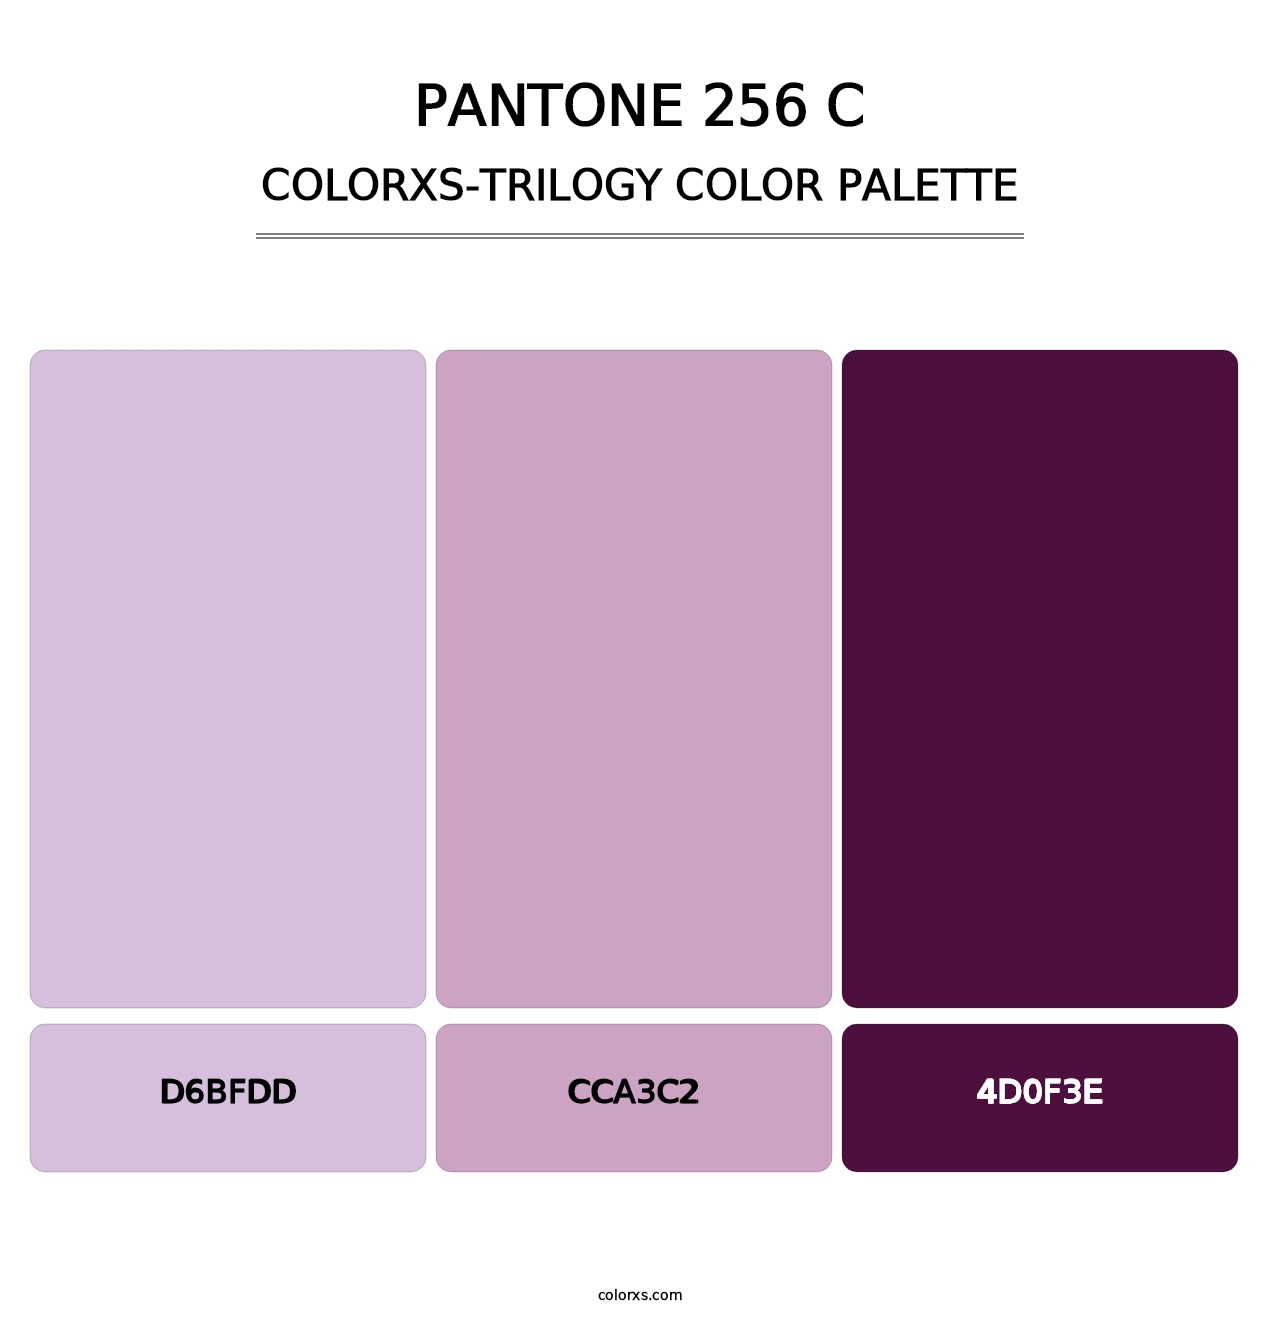 PANTONE 256 C - Colorxs Trilogy Palette